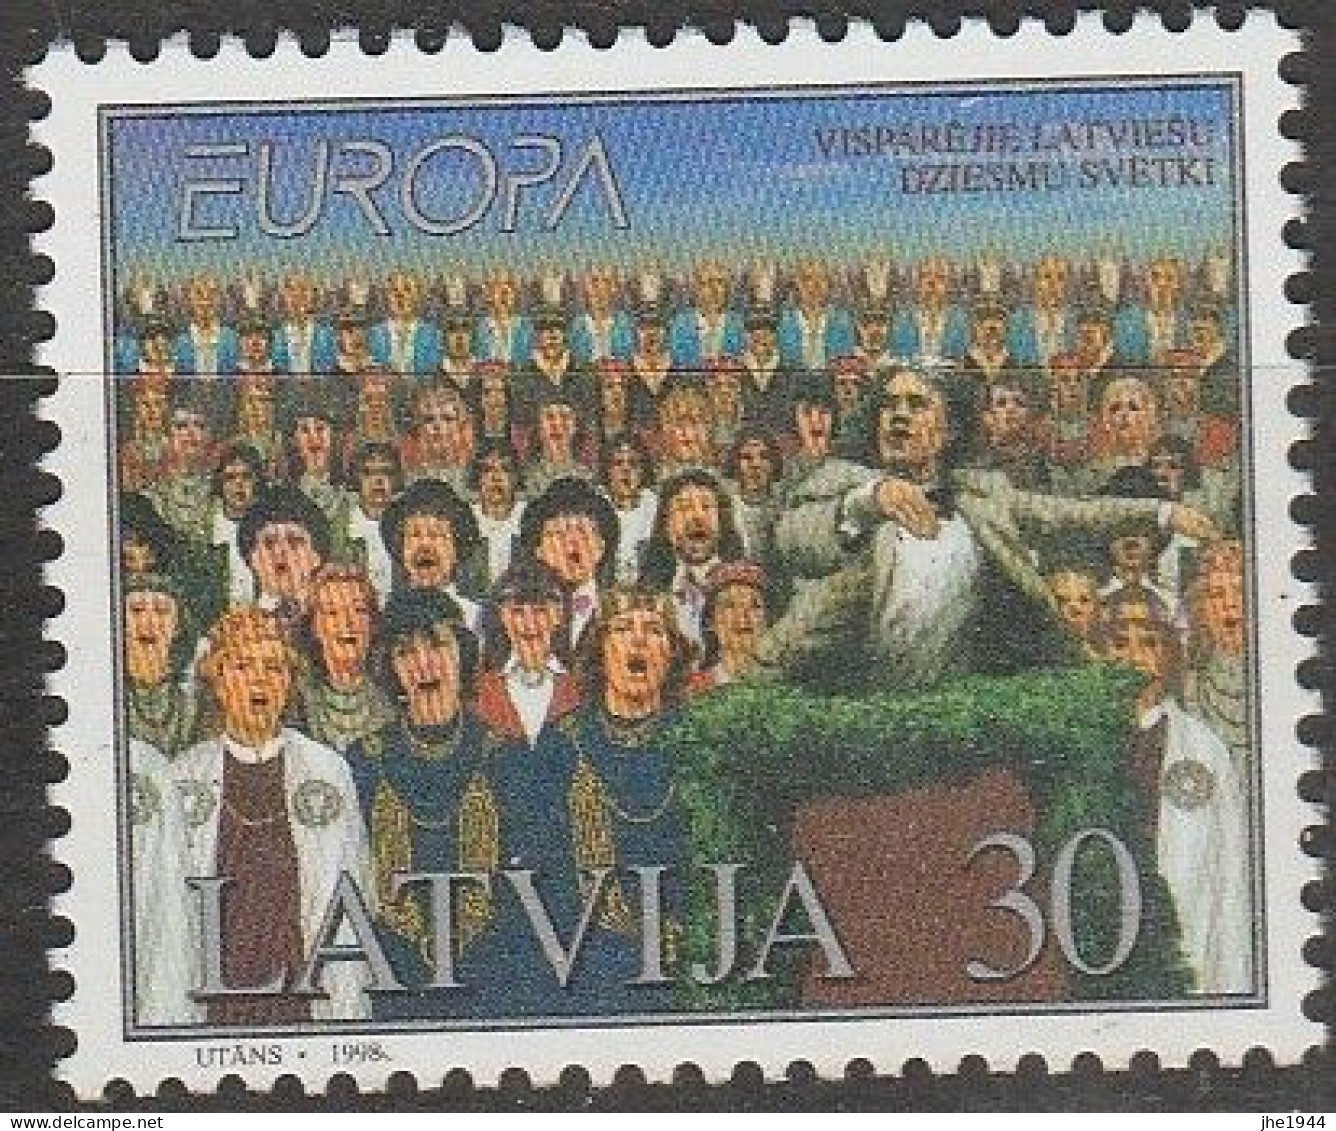 Europa 1998 Festivals nationaux Voir liste des timbres à vendre **